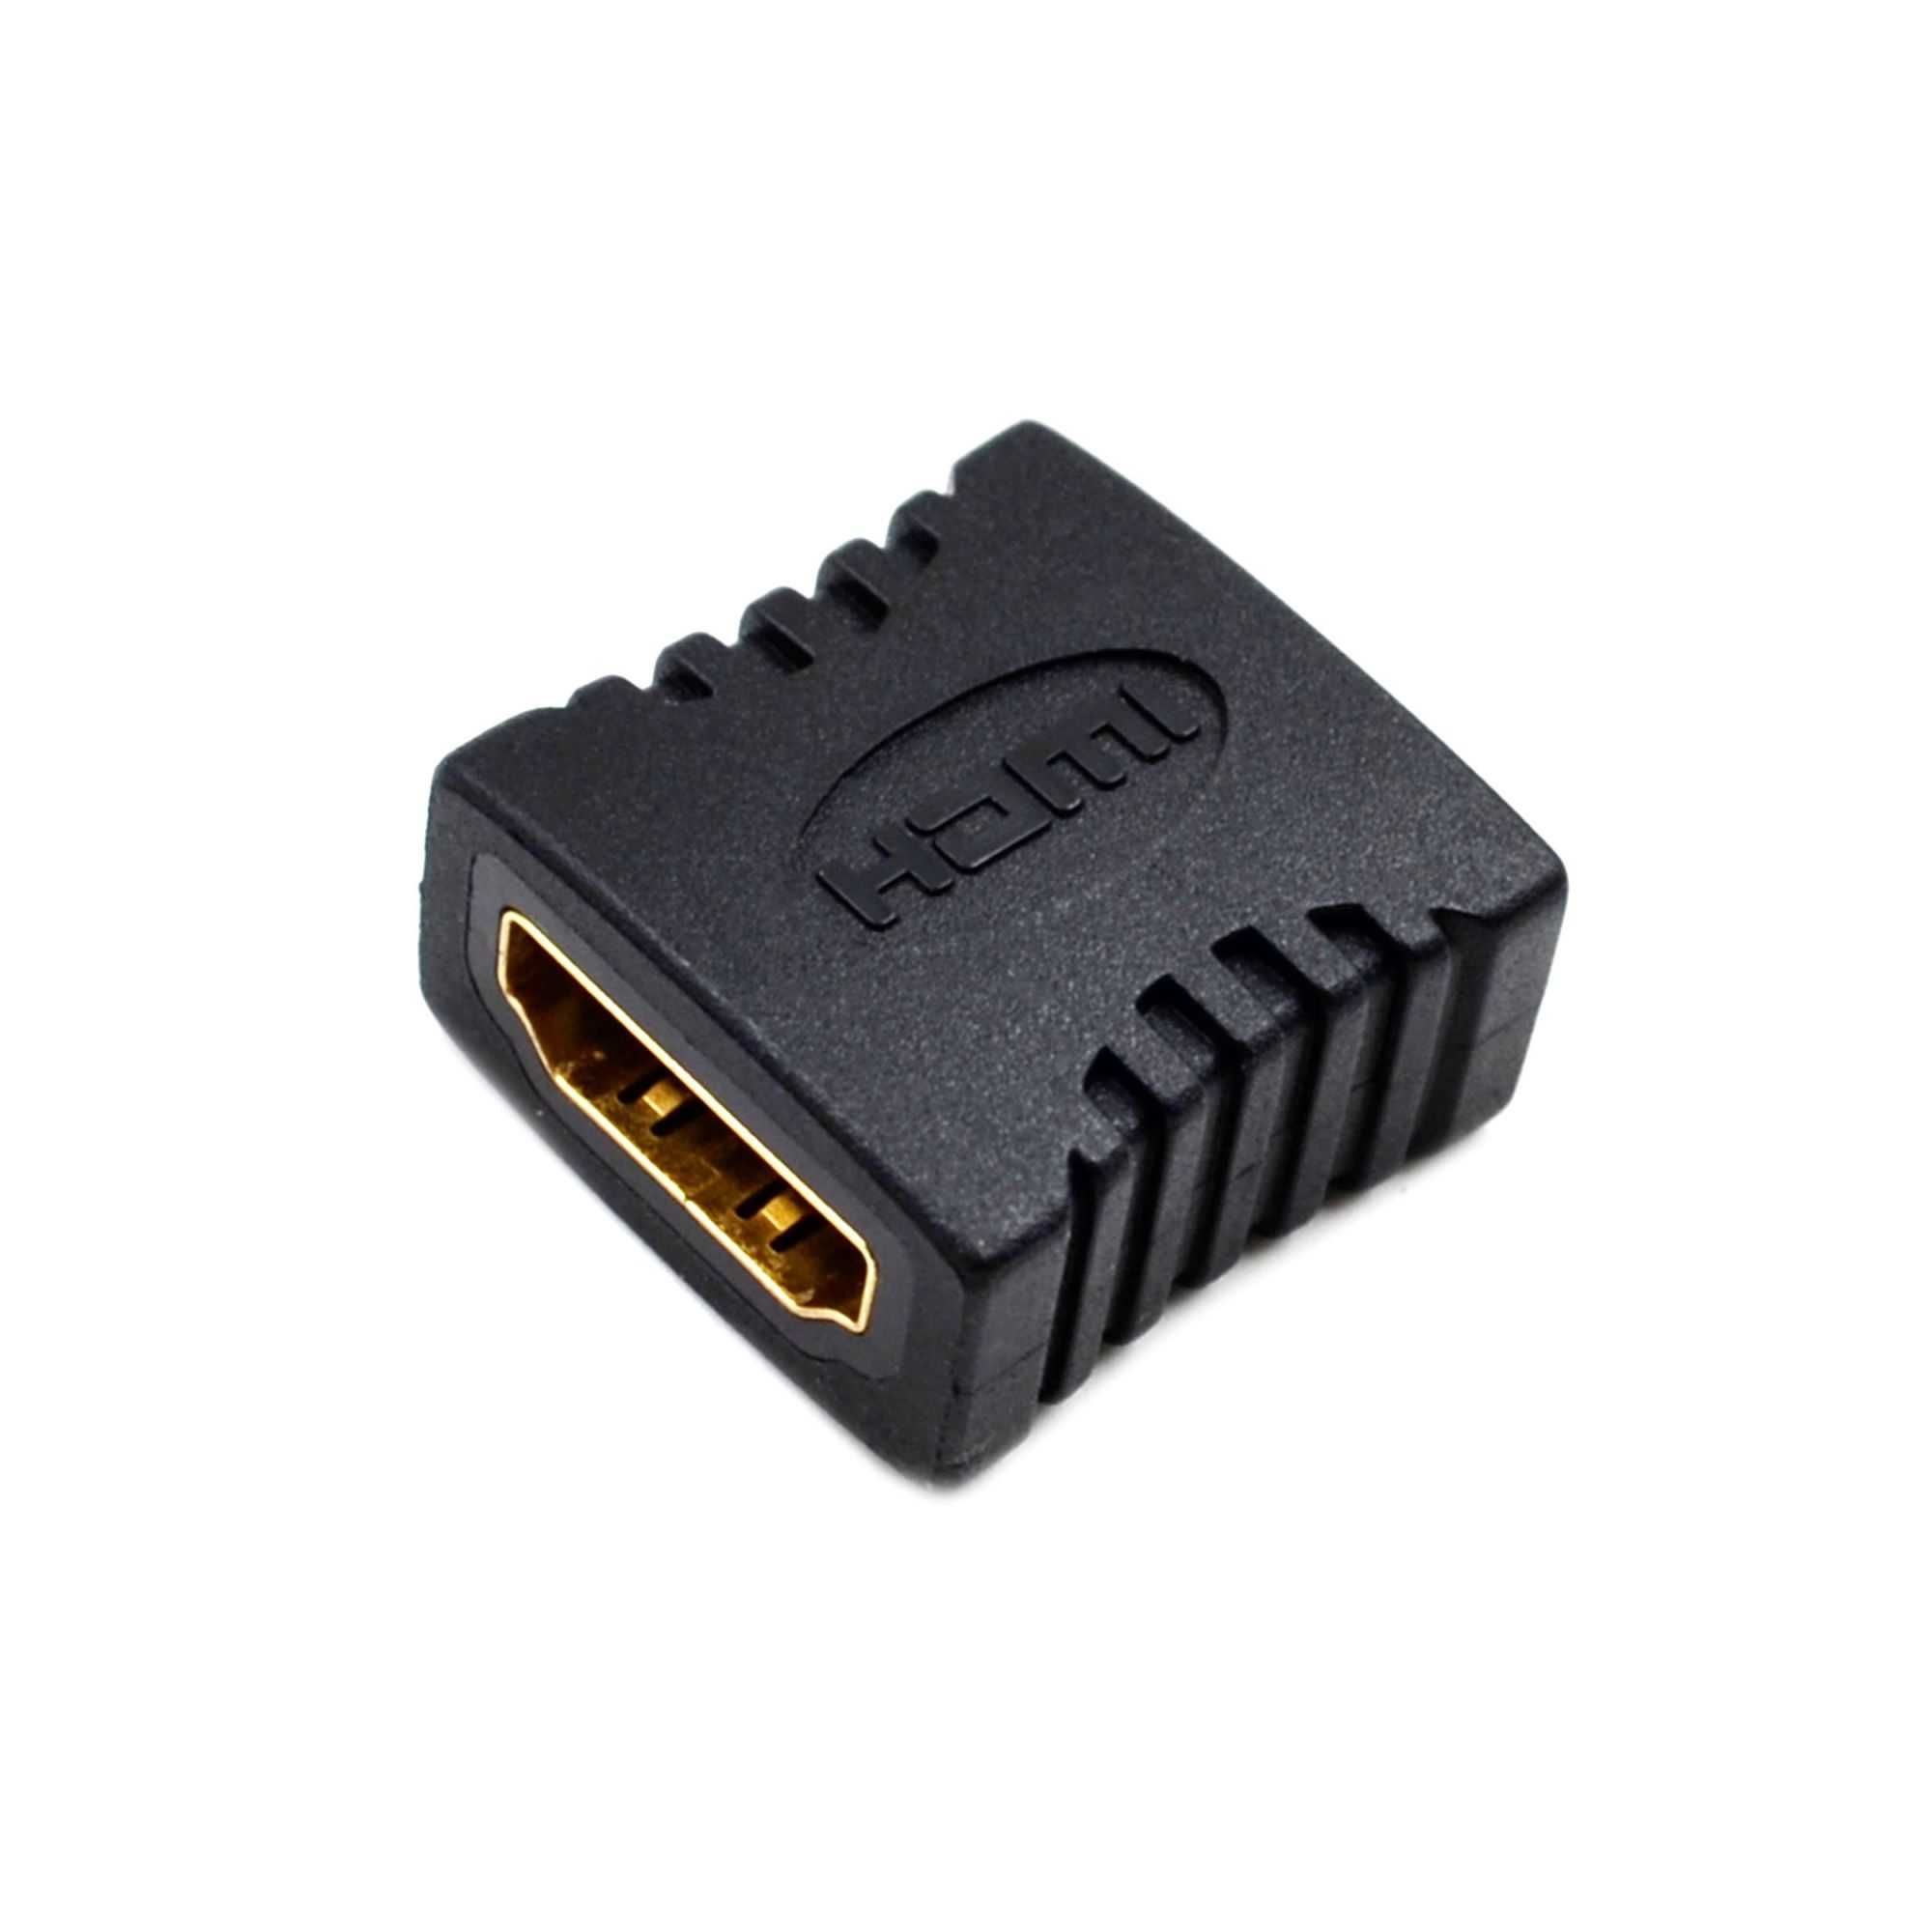 Удлинитель HDMI кабель, переходник, адаптер